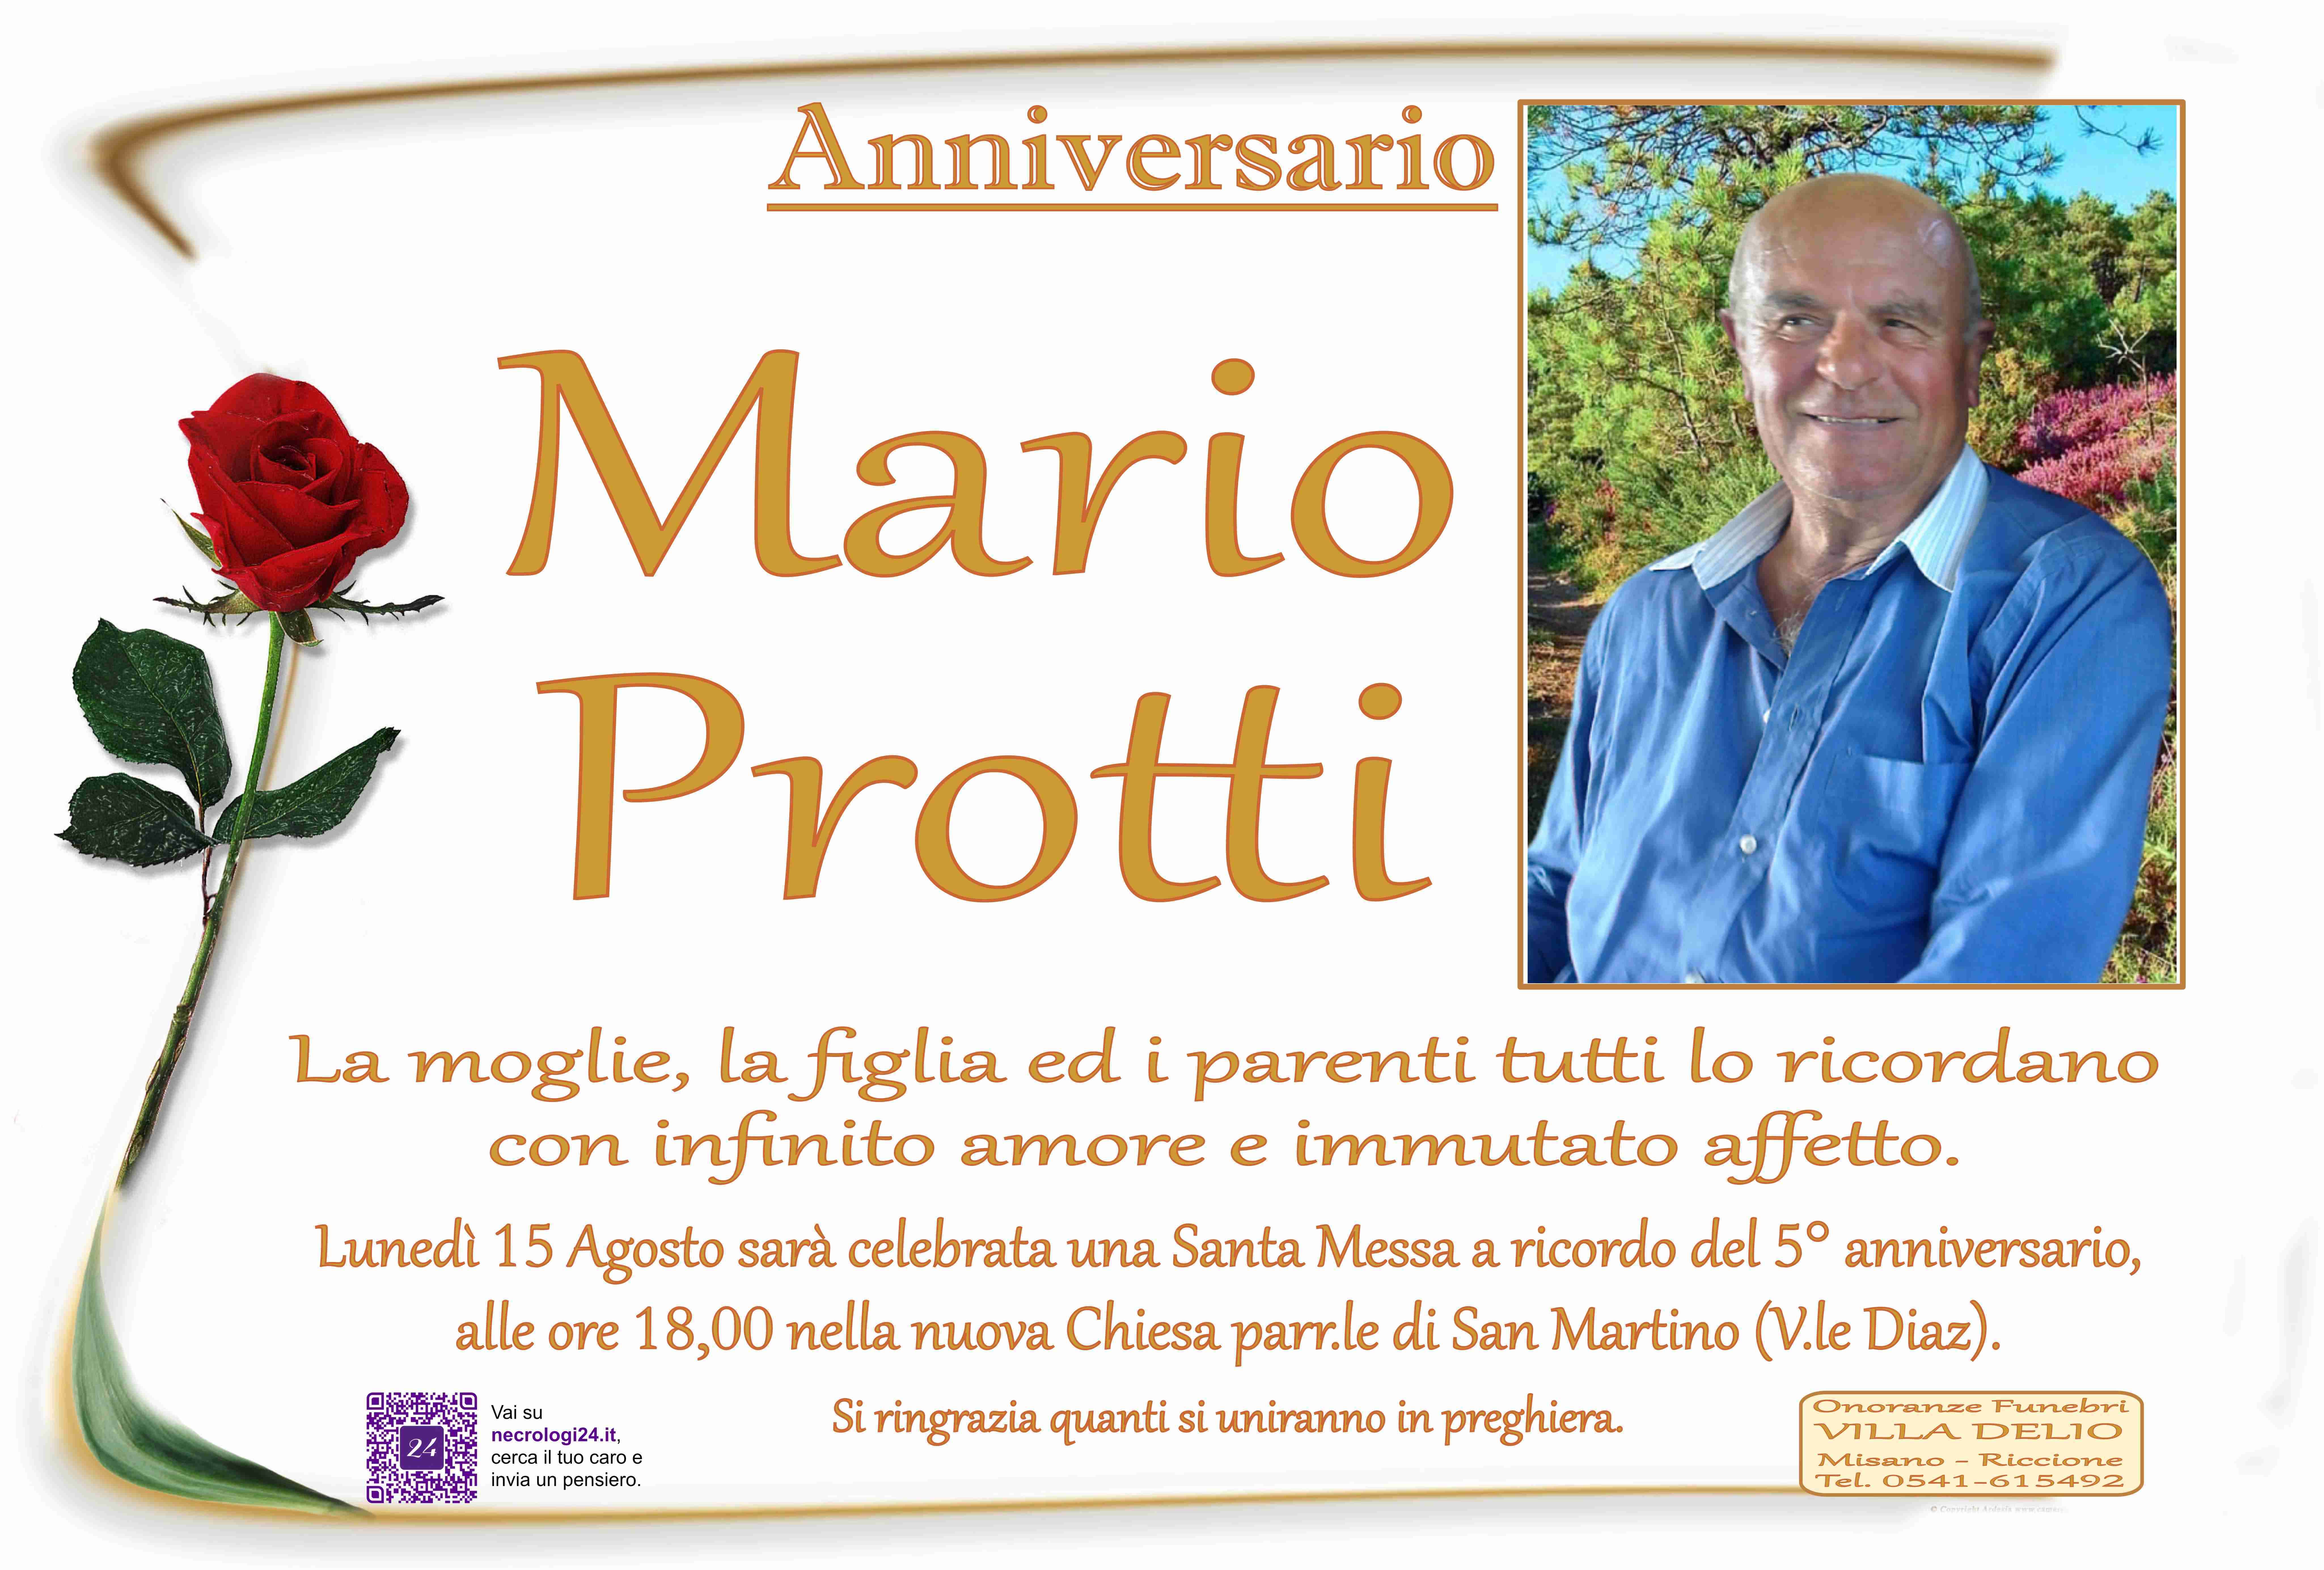 Mario Protti